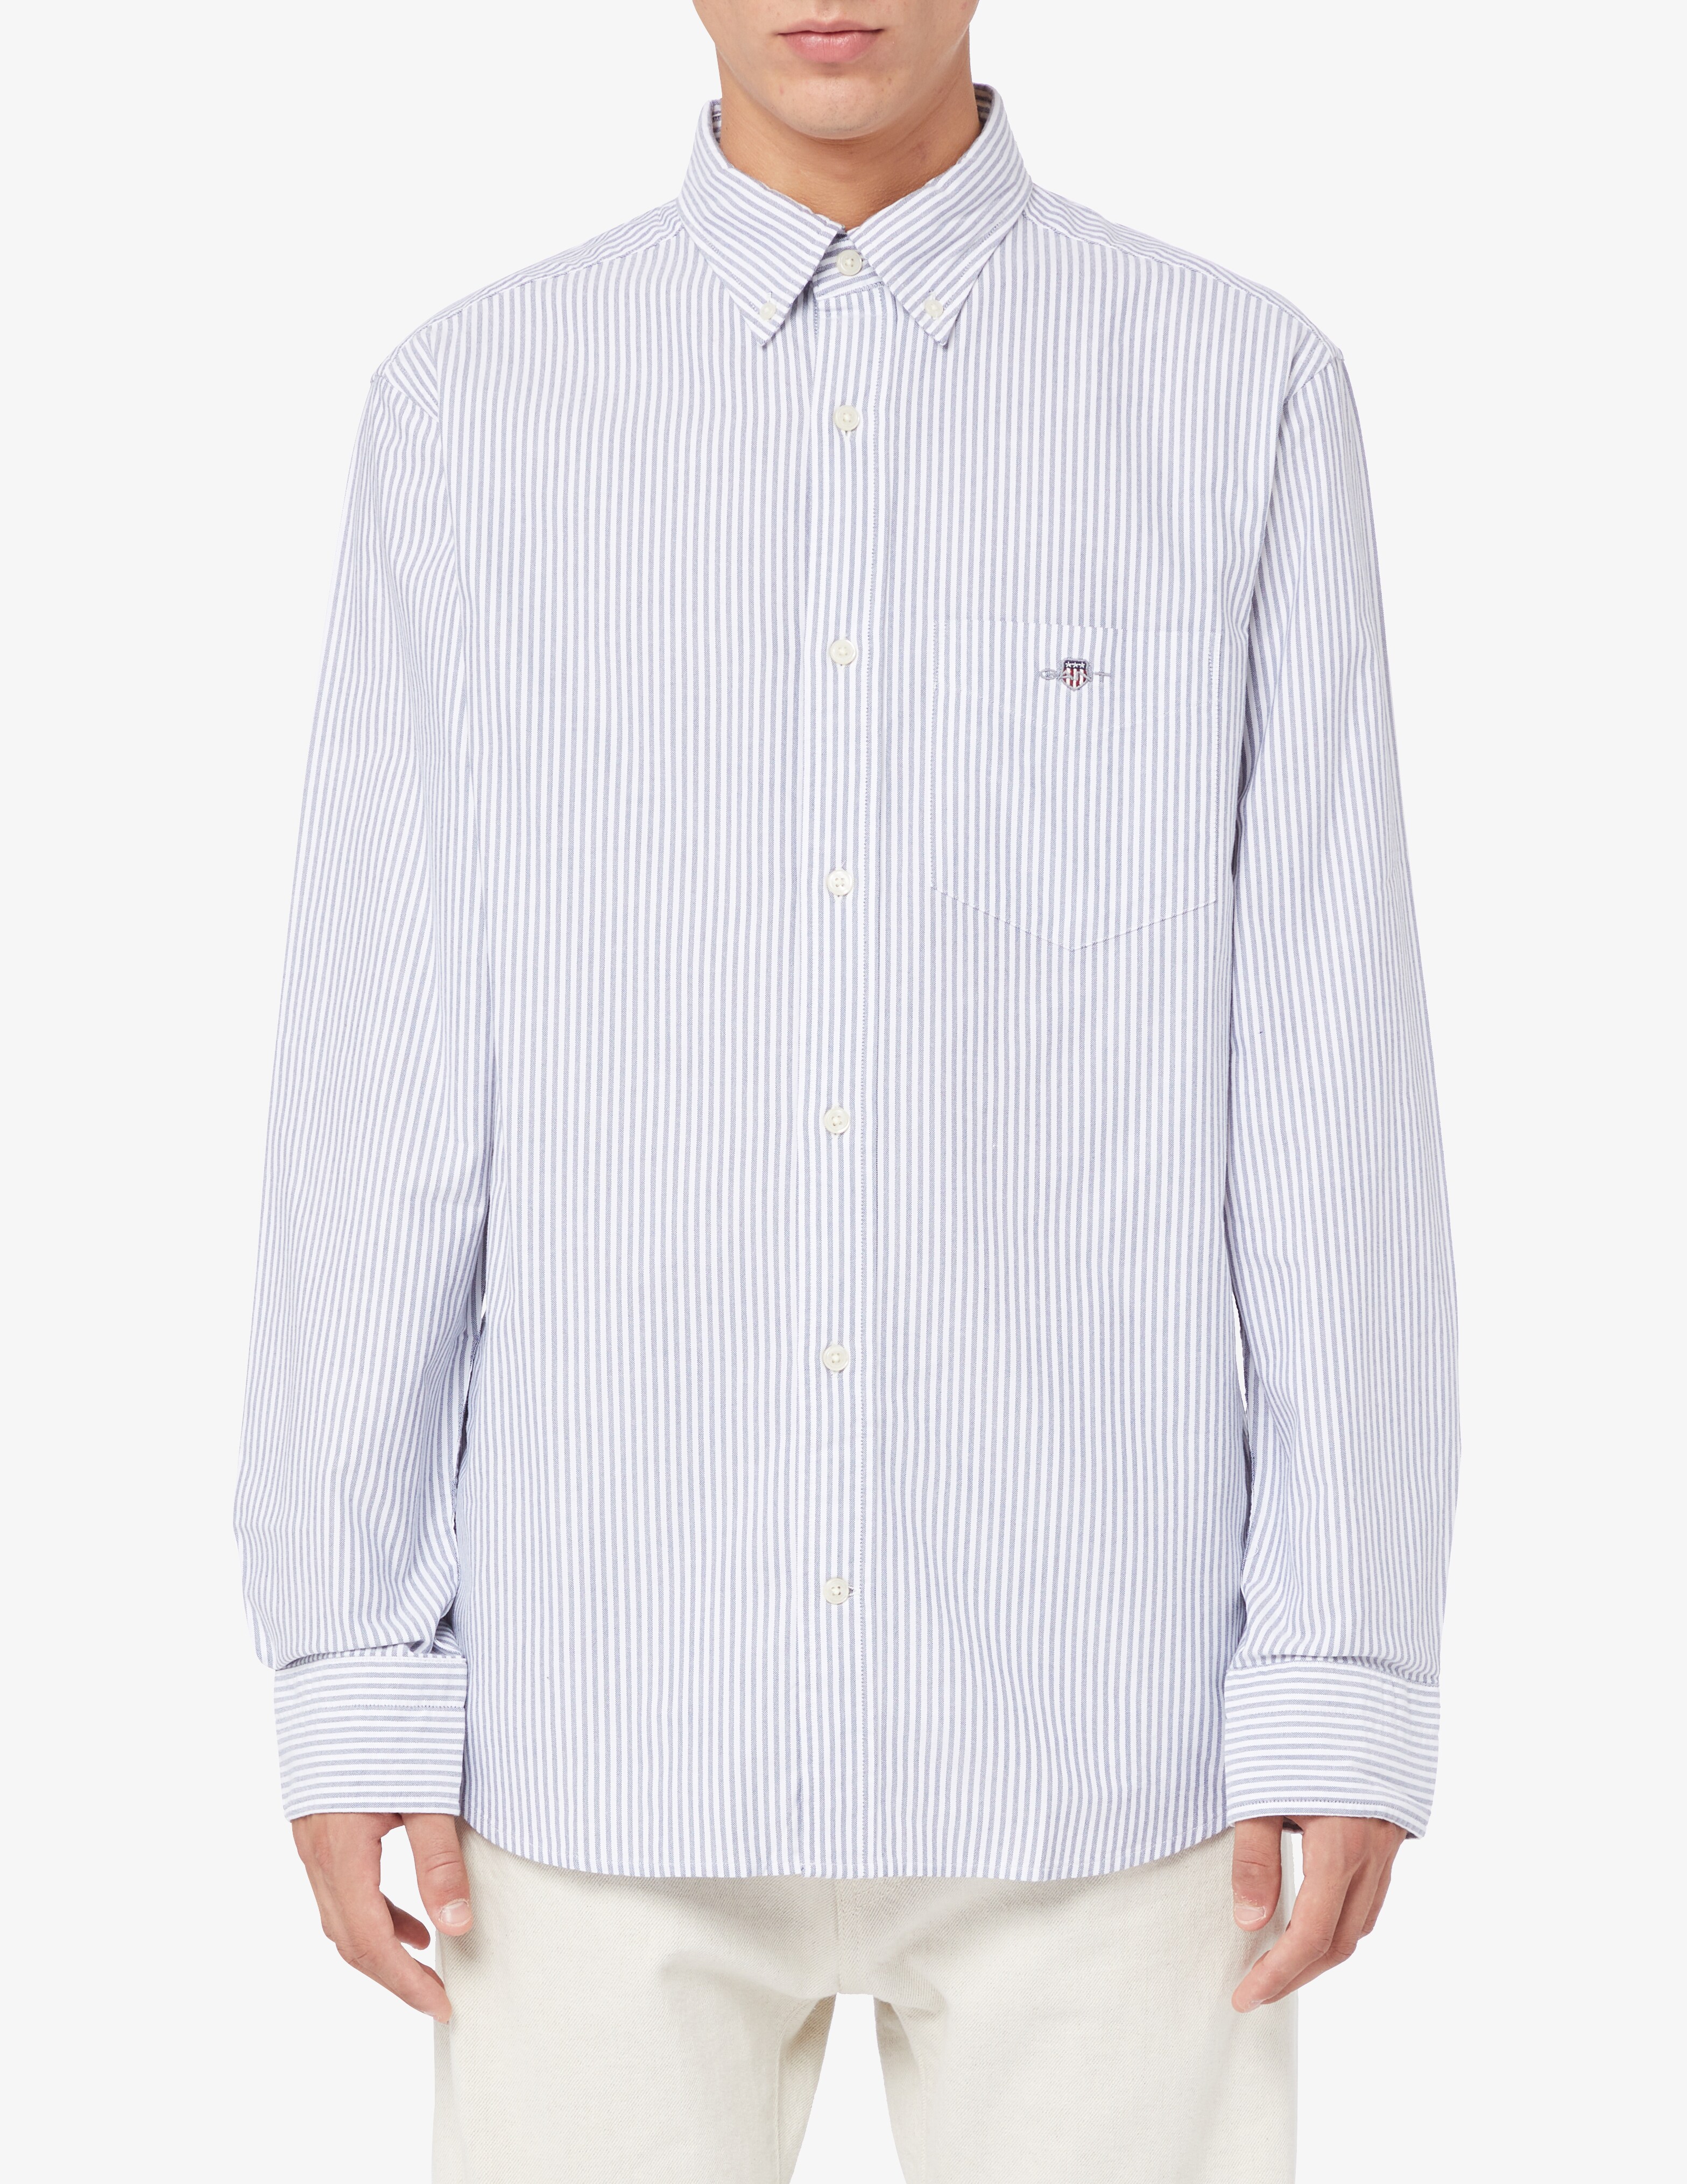 Оксфордская рубашка в мелкую полоску Gant, белый брюки oodji в мелкую полоску 48 размер новые